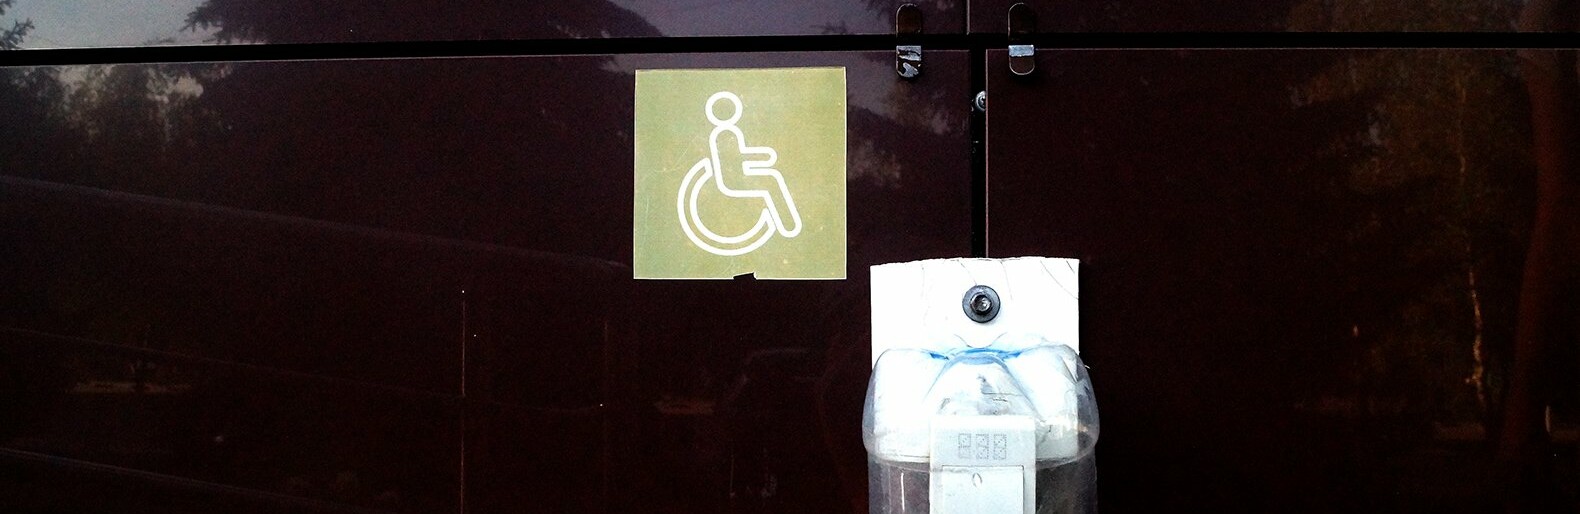 Гладков заявил о недоступности среды для инвалидов в Белгороде